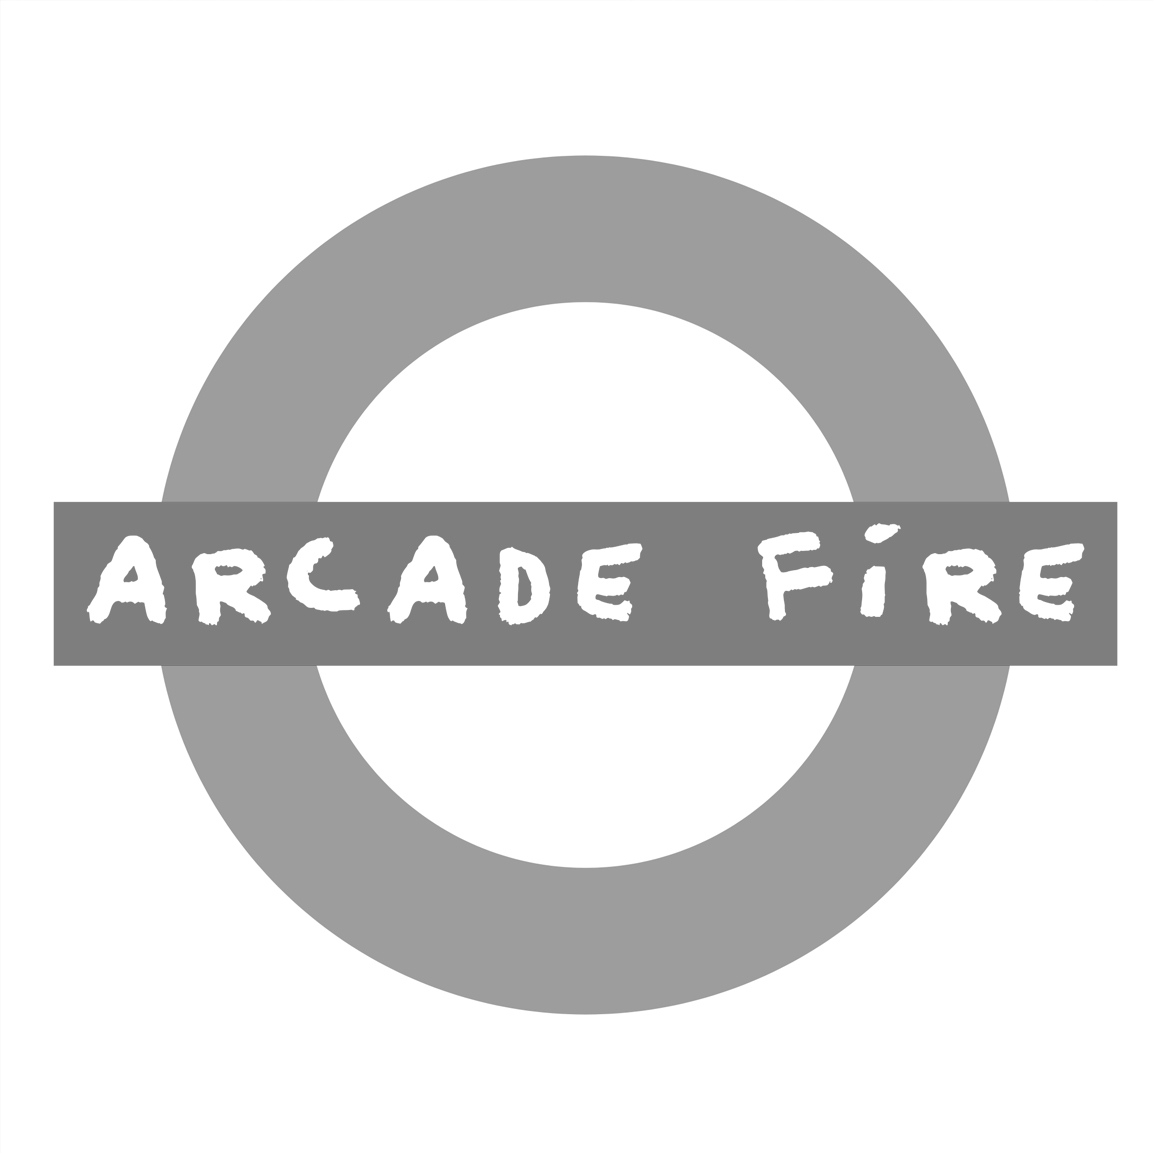 ARCADE FIRE